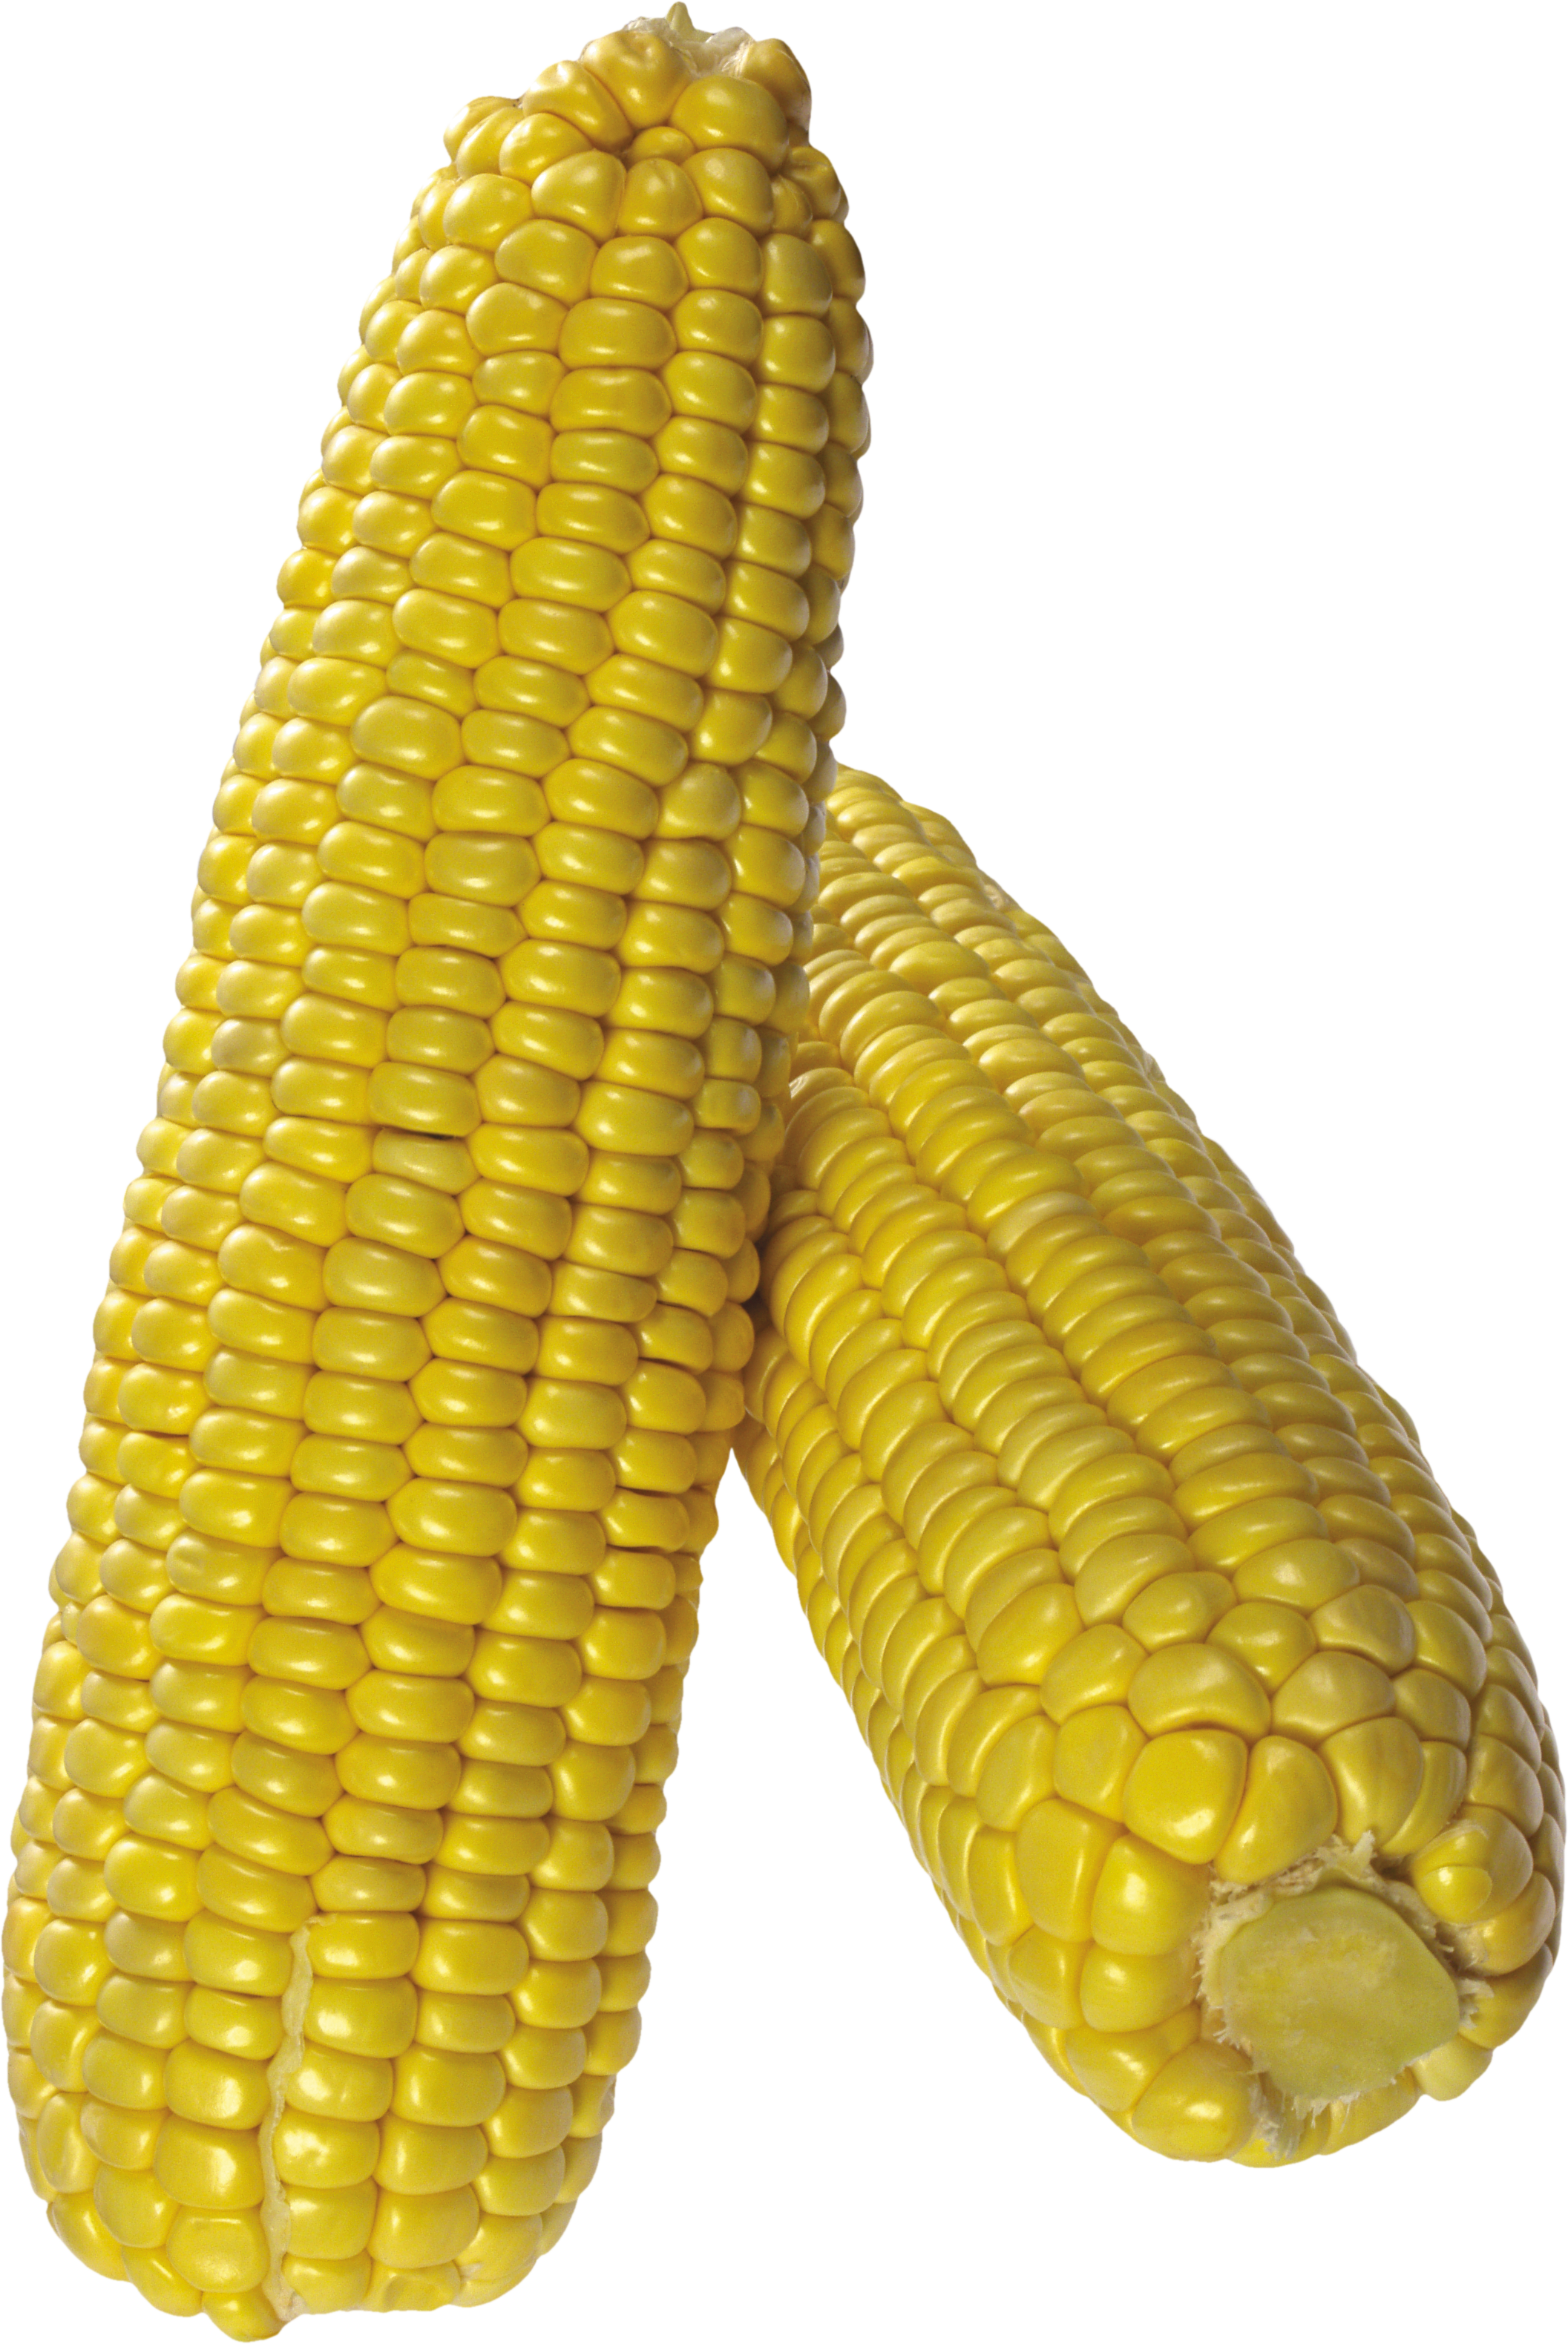 corn clipart colored corn